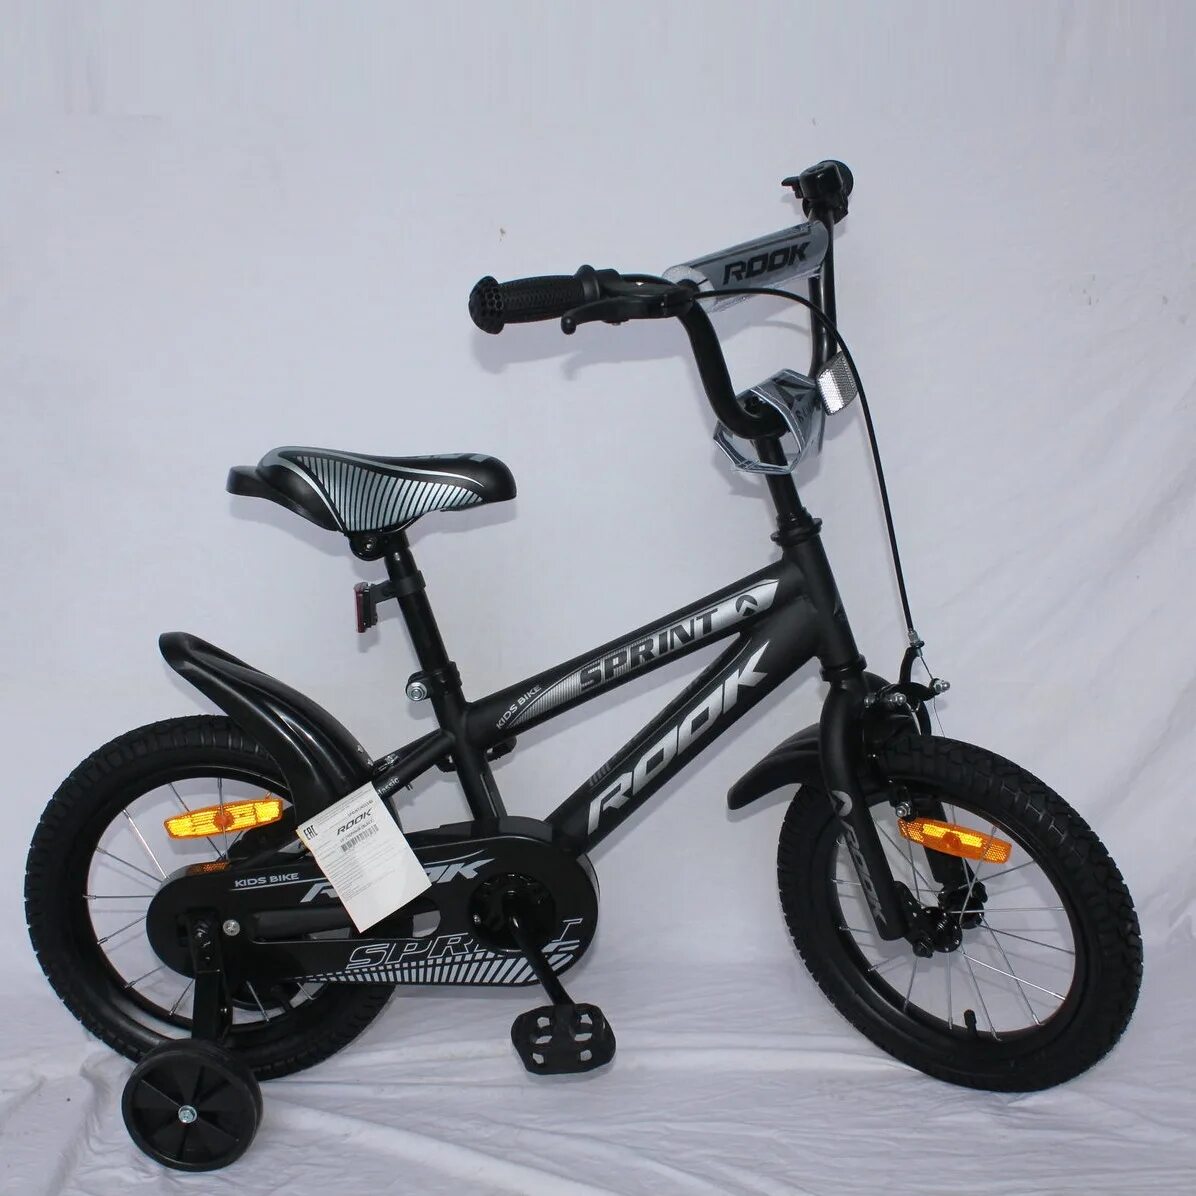 Спринт 14. Велосипед Rook Sprint. Sprint Rook велосипед детский 14. Велосипед Rock Sprint 16. Велосипед 16 Rook Sprint чёрный kss160bk.